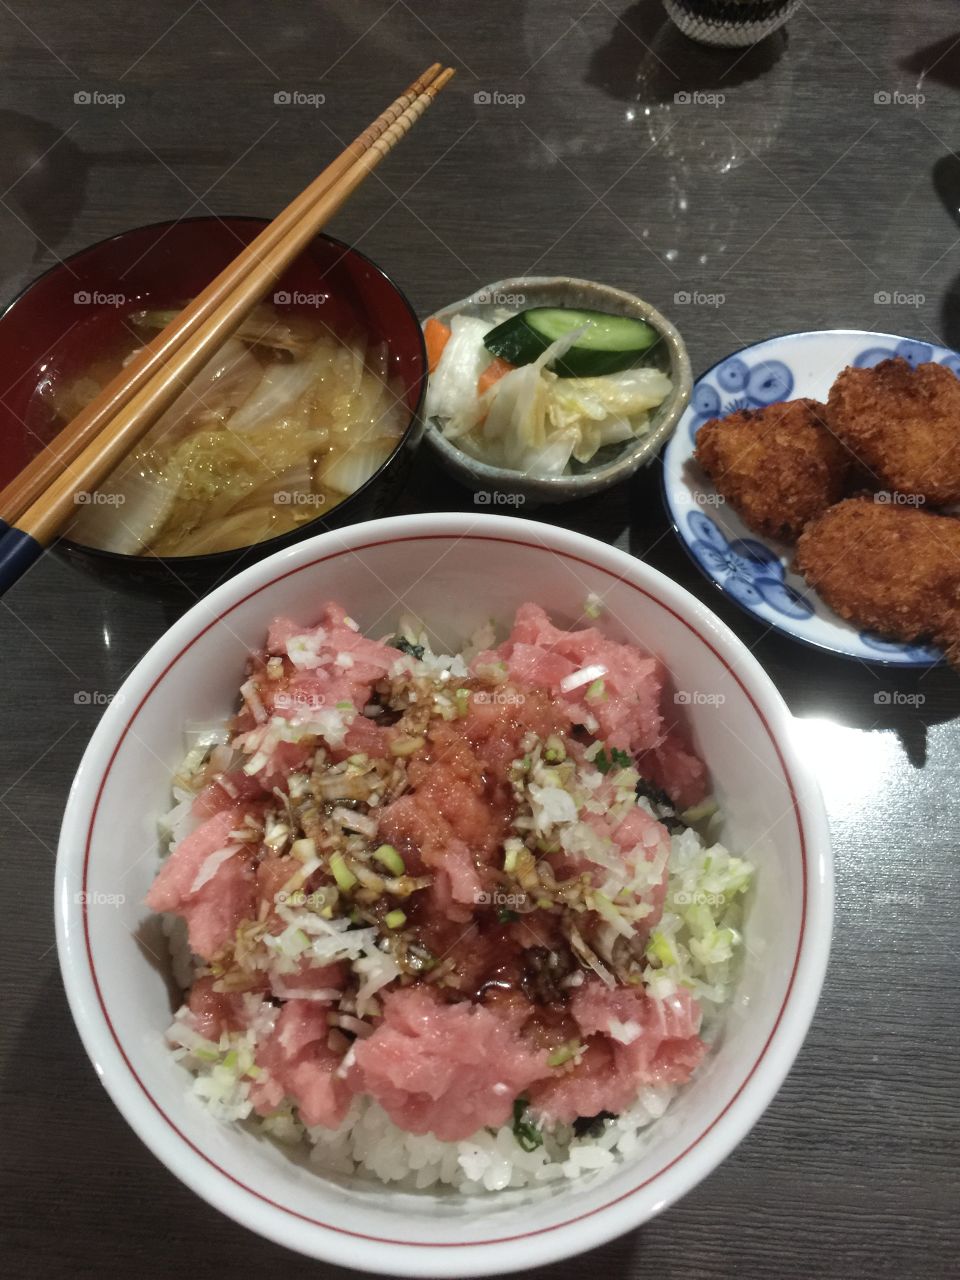 Negitoro, ground-tuna sashimi on rice with green onion